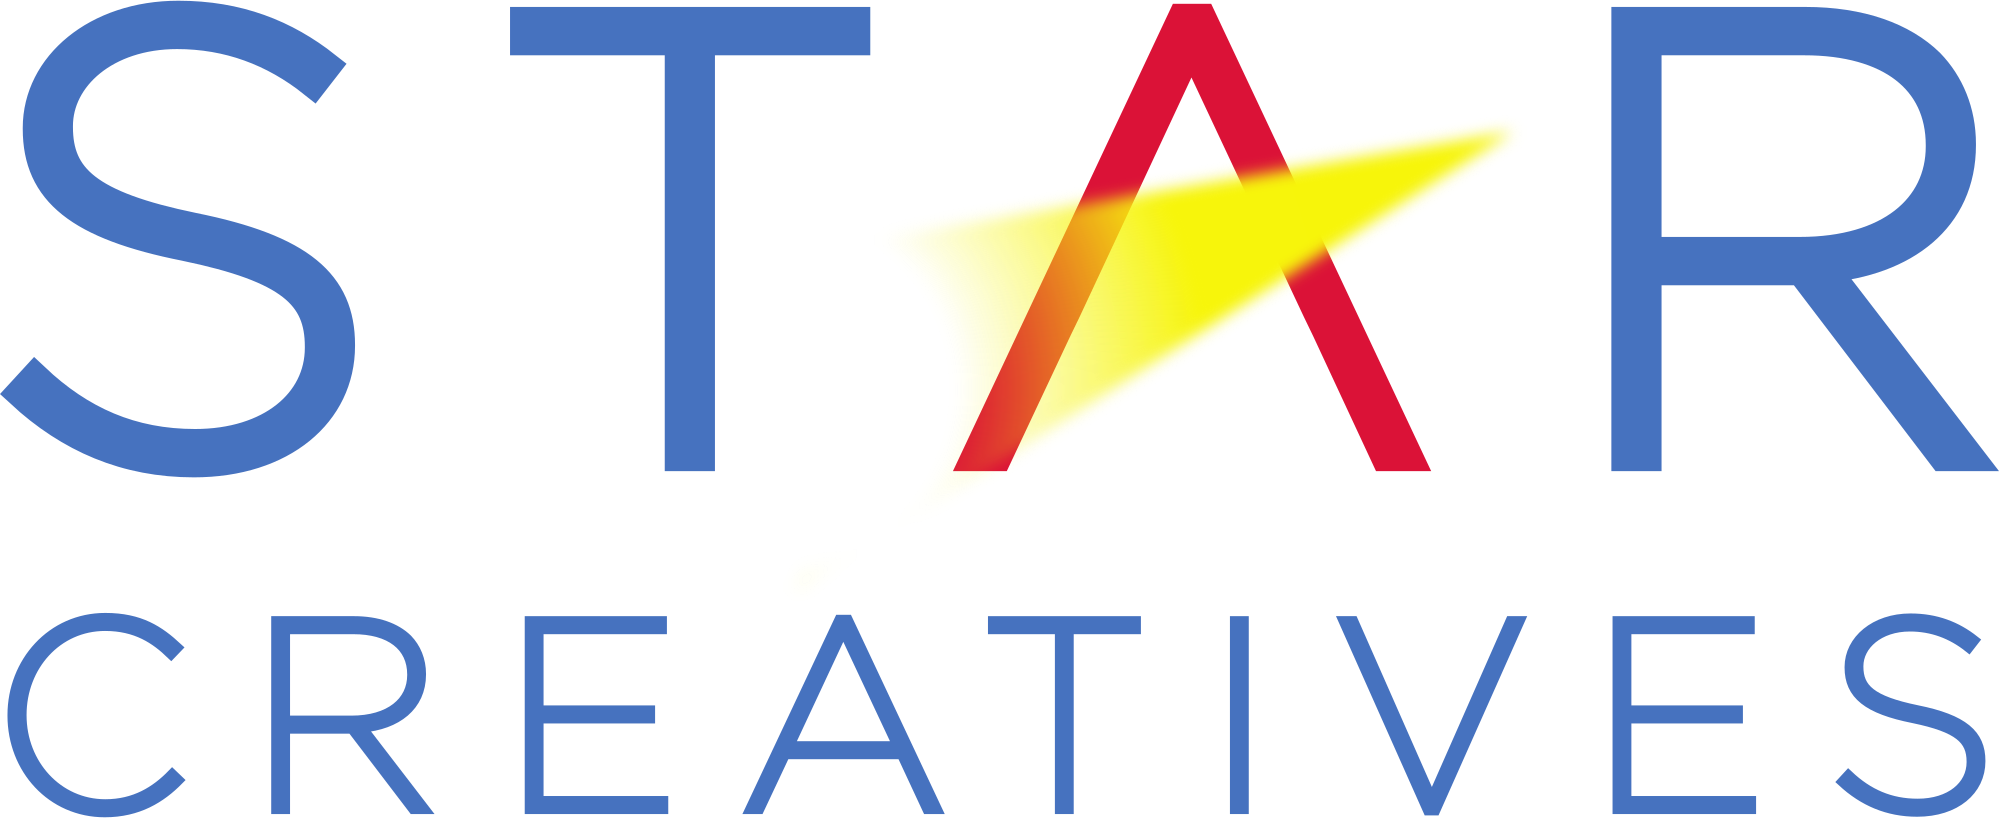 Star Creatives - company